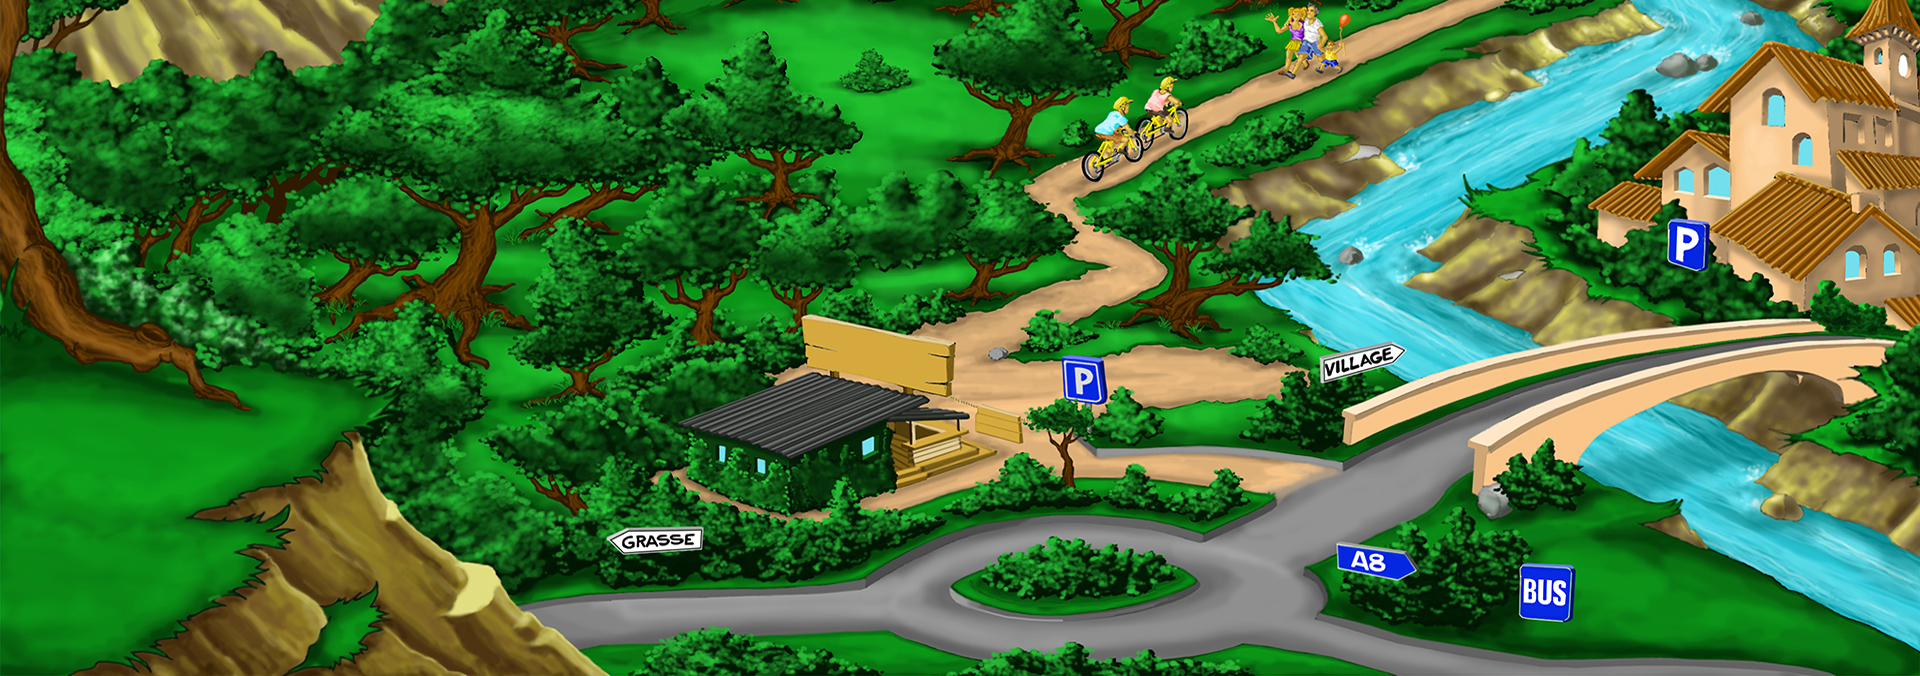 Illustration de l'accès au parc